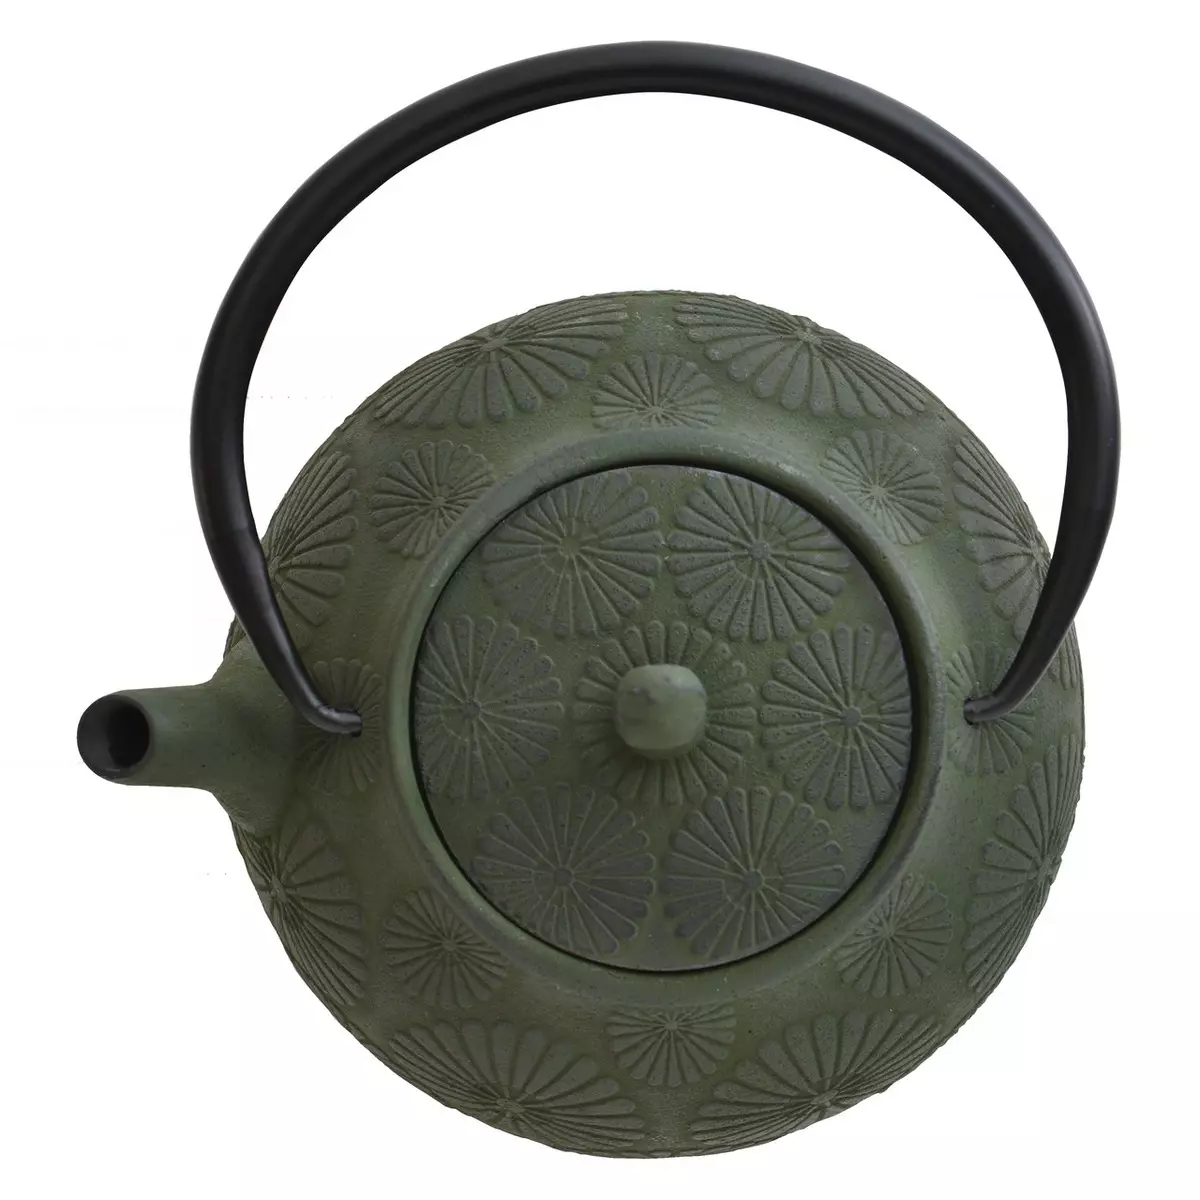 Cast რკინის შედუღების Teapots: როგორ ავირჩიოთ kettle საწყისი თუჯის რკინის ჩაის მწიფდება? Დადებითი და უარყოფითი მხარეები. შეფასება 10986_12